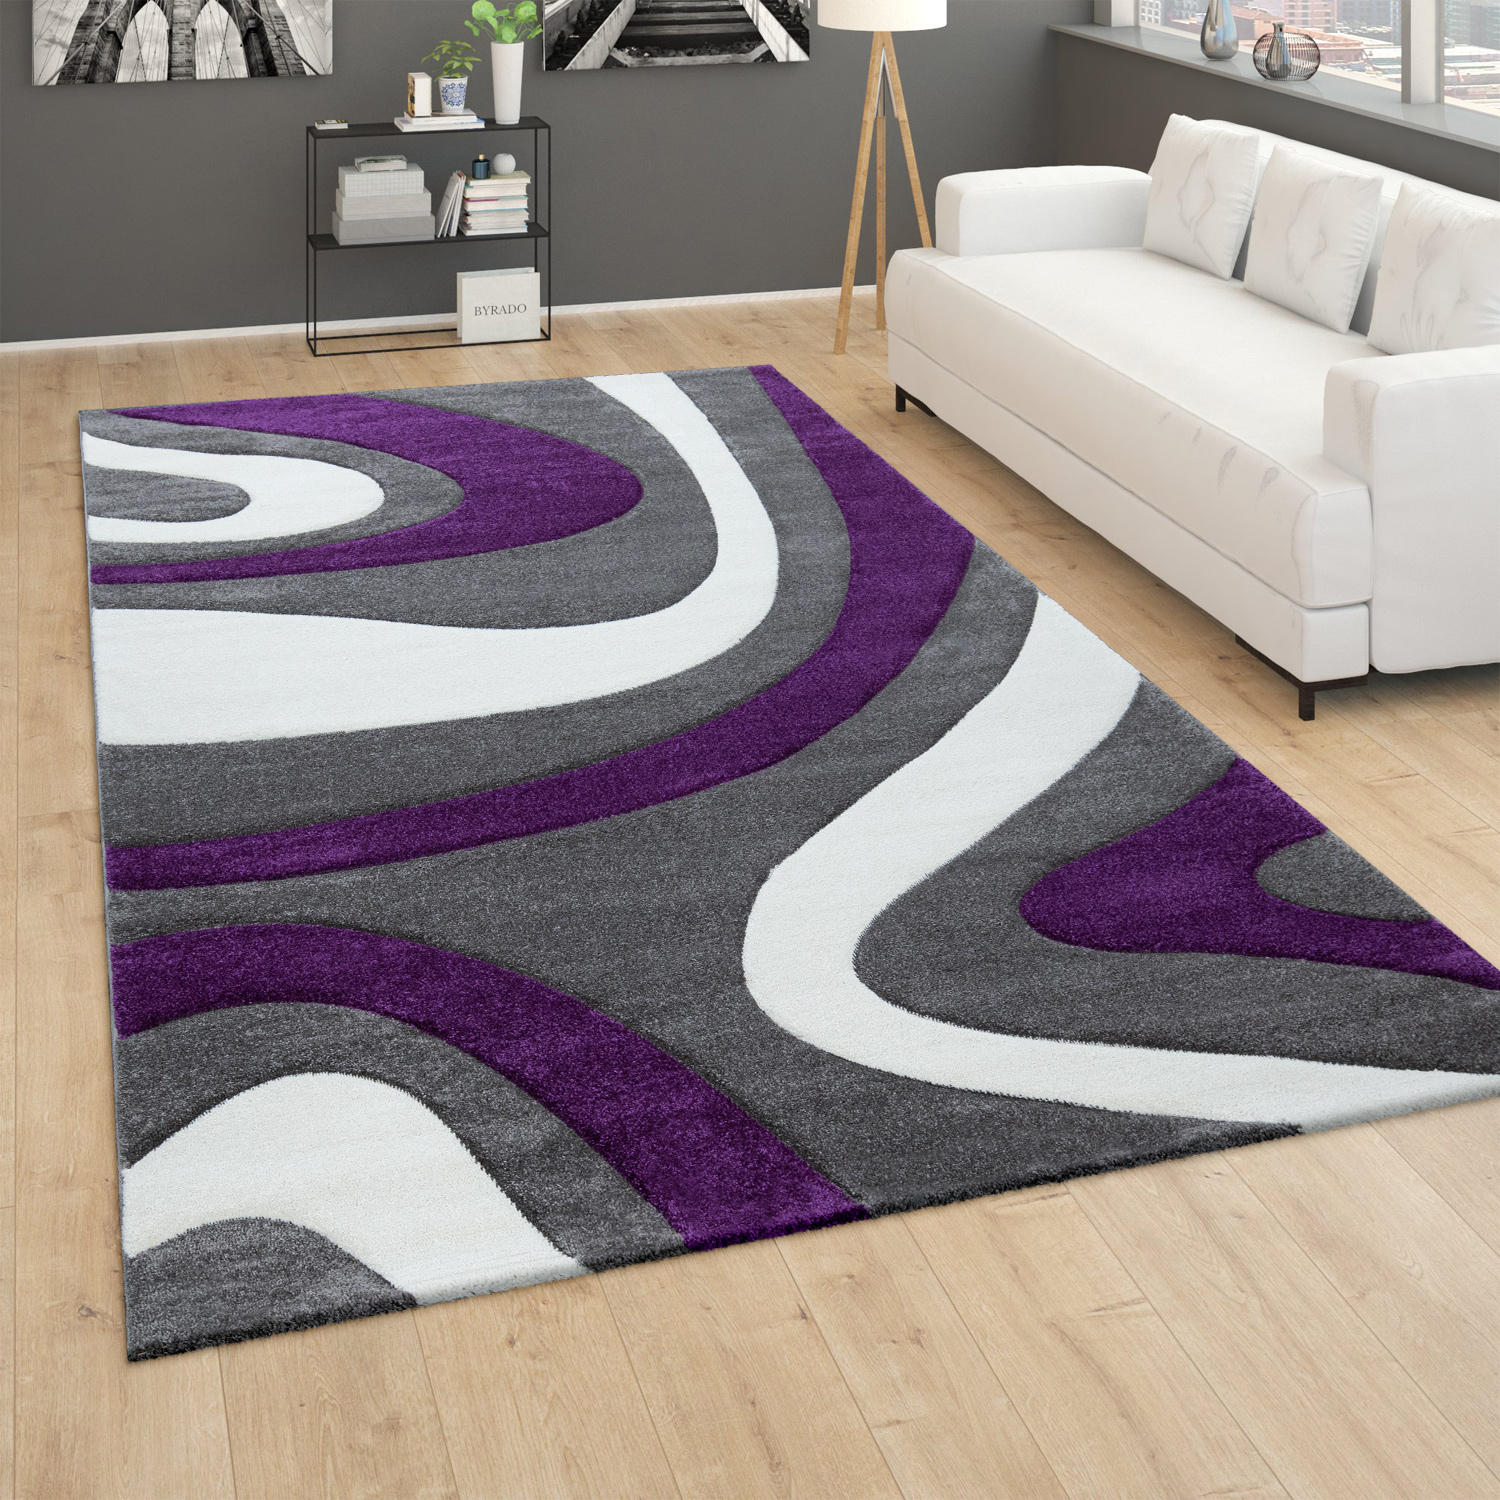 Kurzflor Wohnzimmer Teppich Modern Geometrisches Design Rauten Muster In Lila 